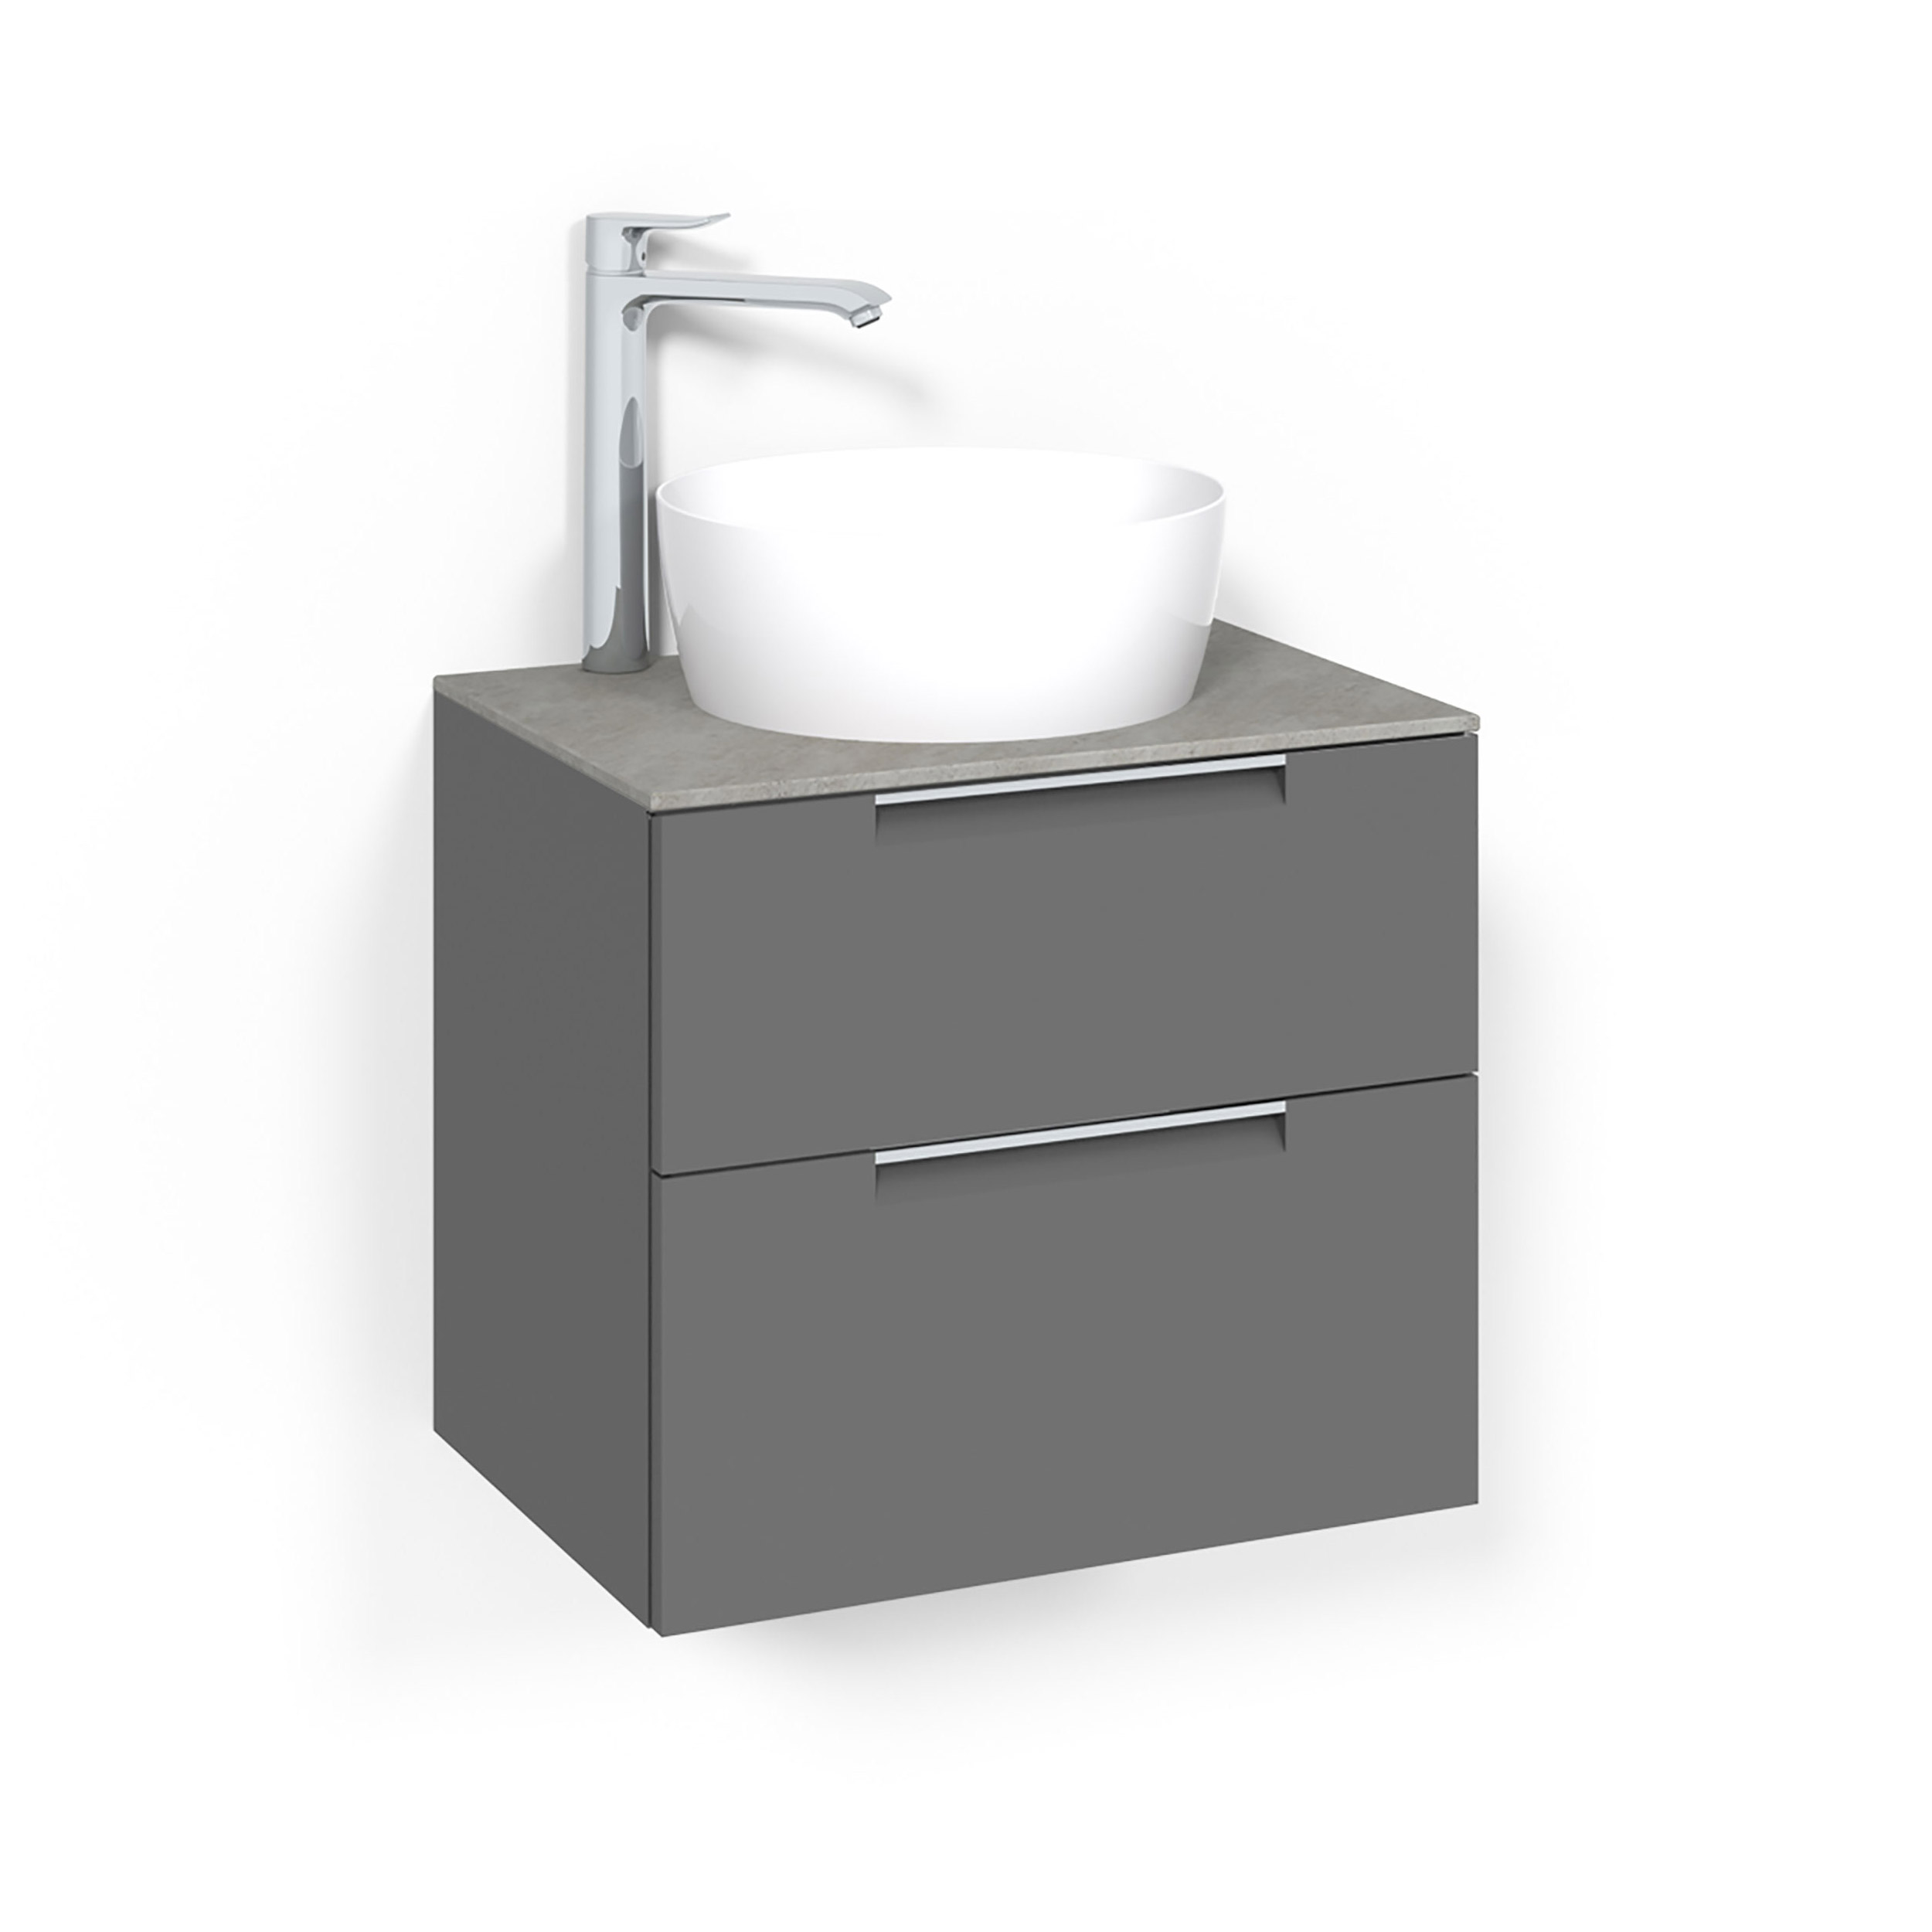 Tvättställsskåp Macro Design Crown Grip Ovanpåliggande Tvättställ